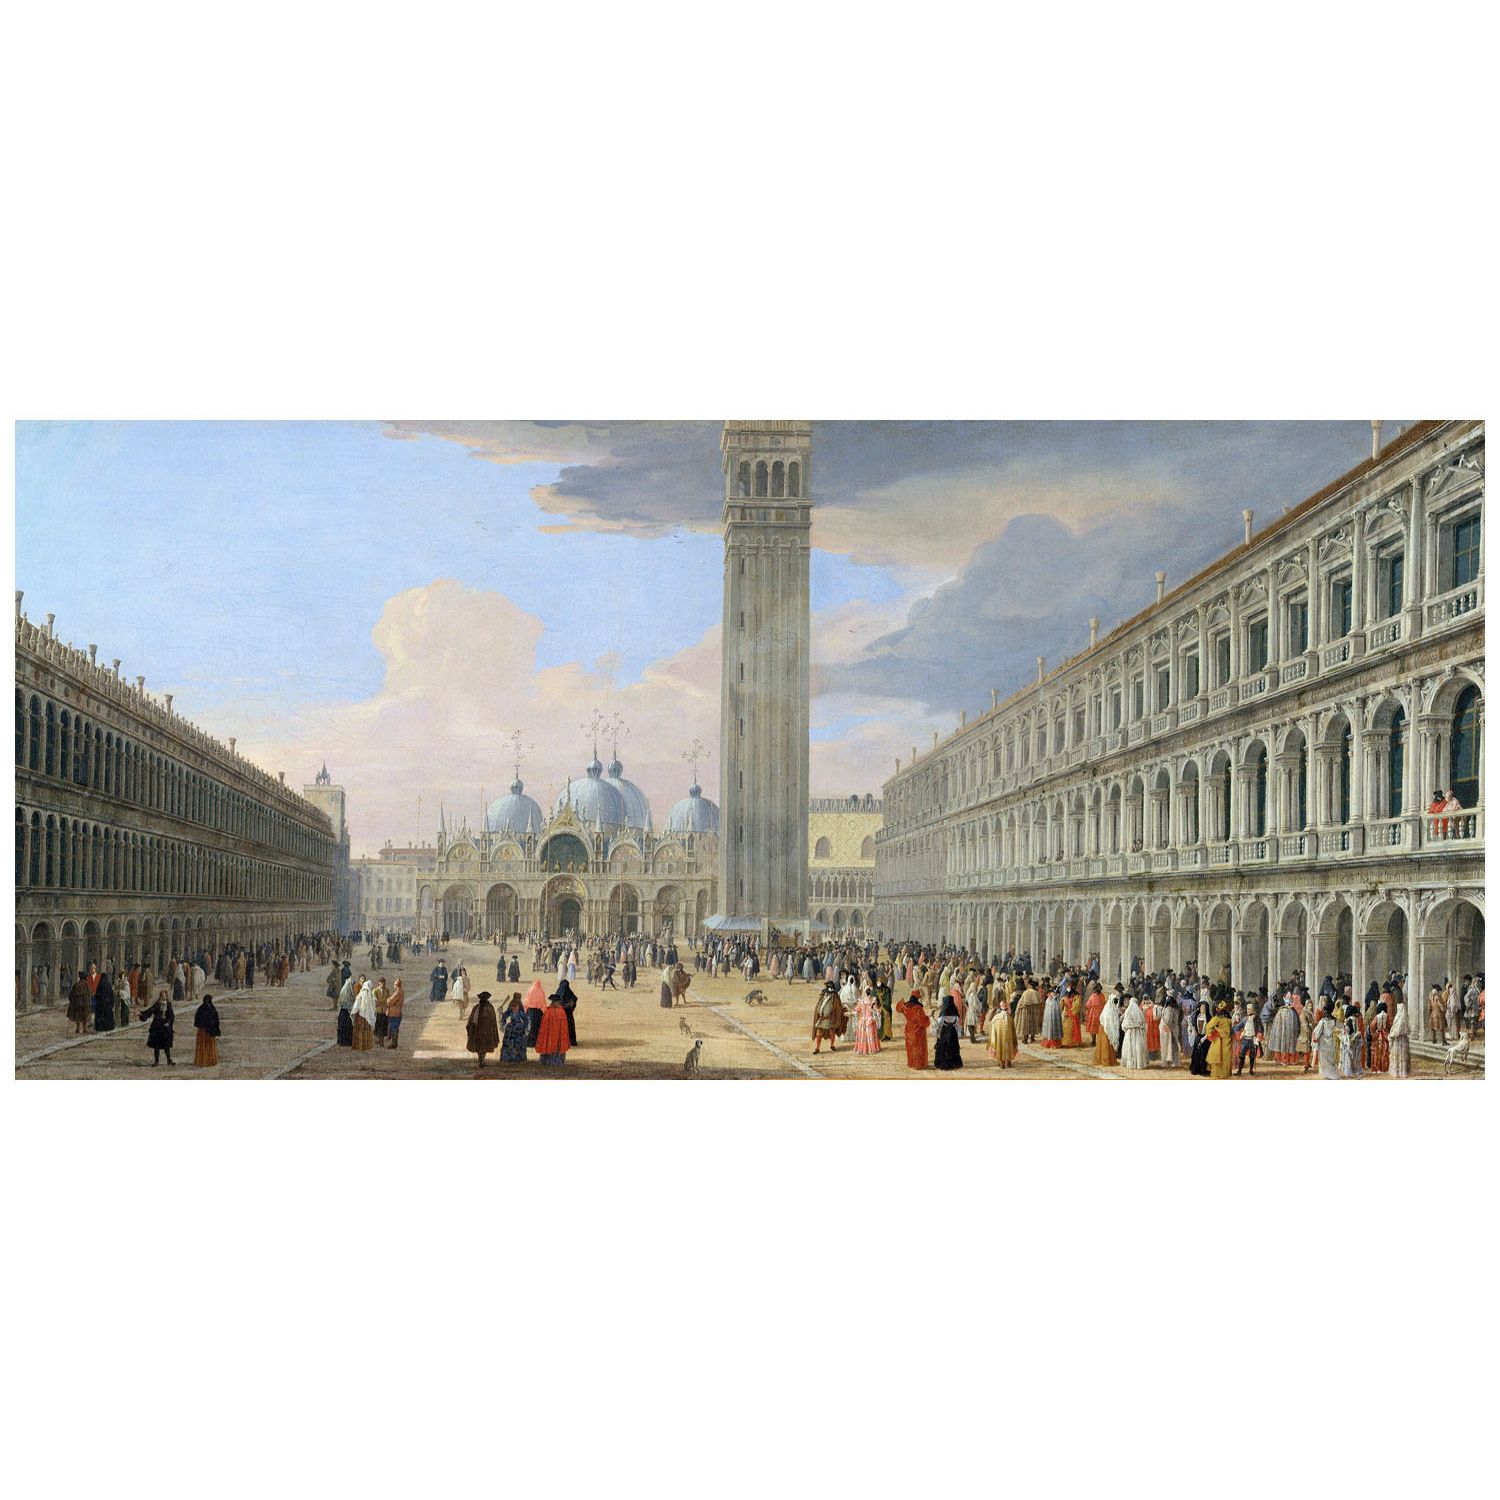 Luca Carlevarijs. Piazza San Marco. 1709. Metropolitan Museum of Art NY